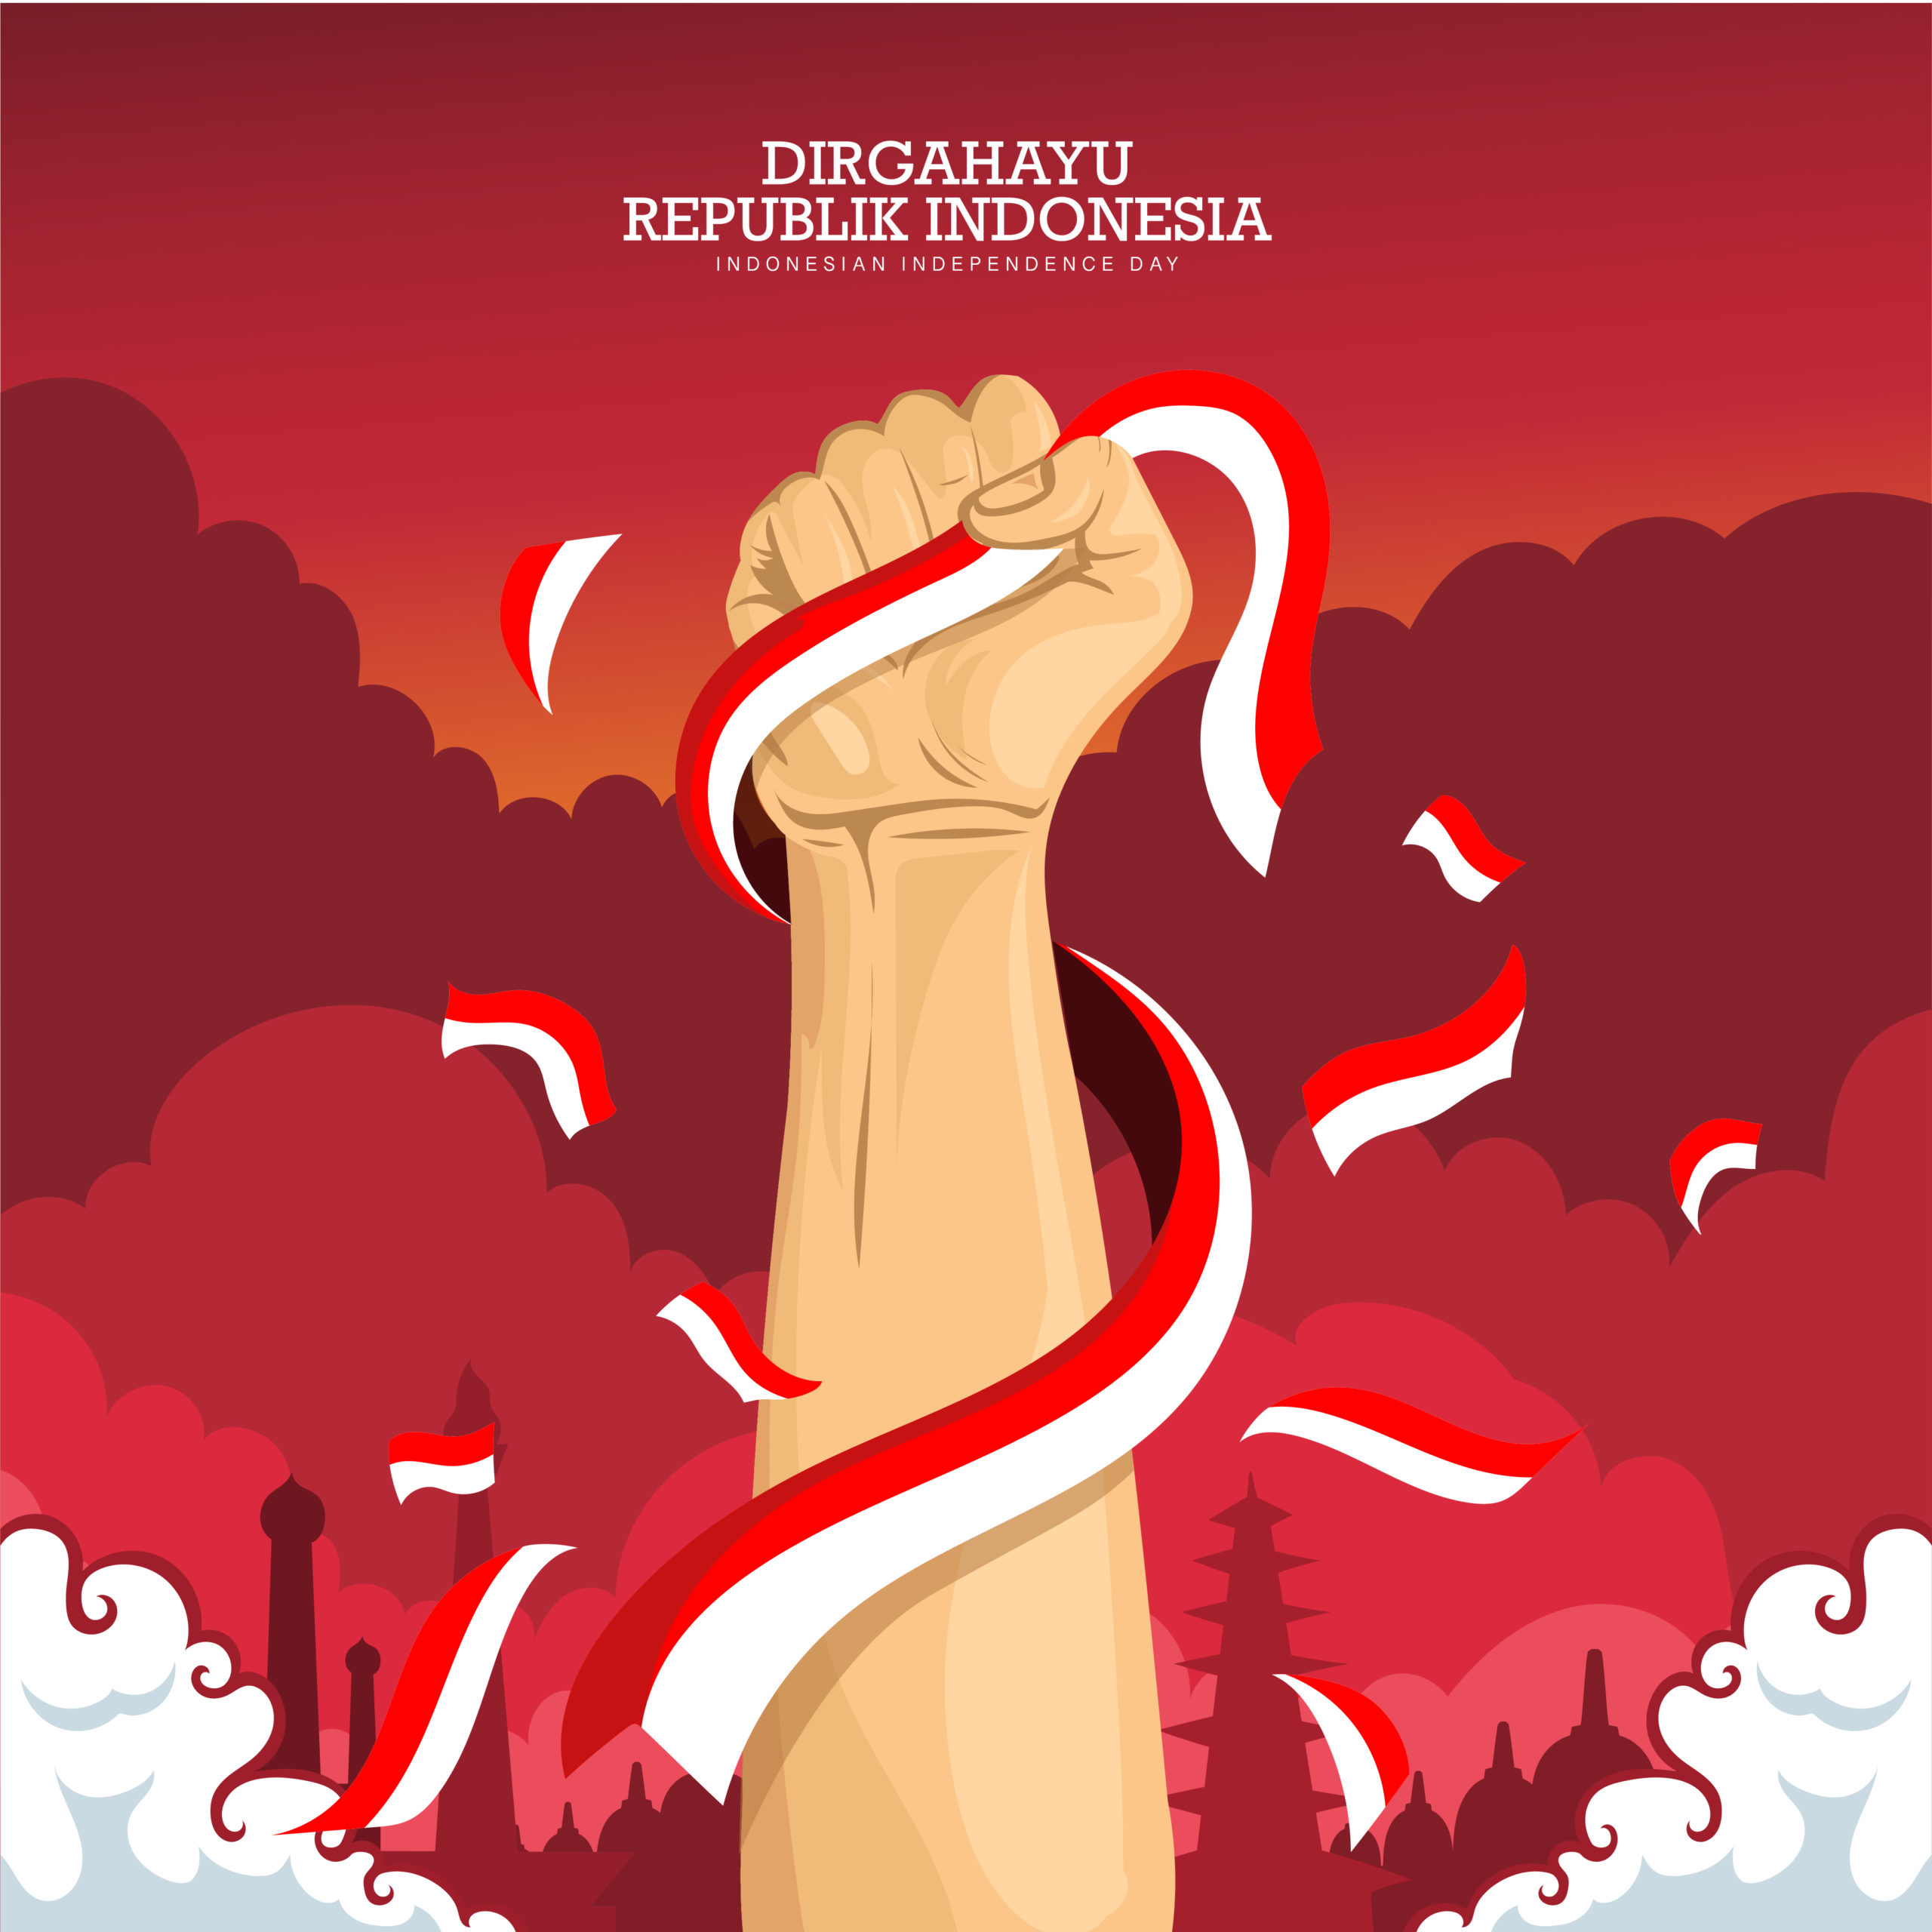 २०२२ च्या स्वातंत्र्यदिनाच्या शुभेच्छा: दिरगाहयु केमेरदेकान इंडोनेशिया शुभेच्छा, शुभेच्छा, प्रतिमा, कोट्स, प्रतिमा, संदेश आणि इंस्टाग्राम कॅप्शन शेअर करण्यासाठी